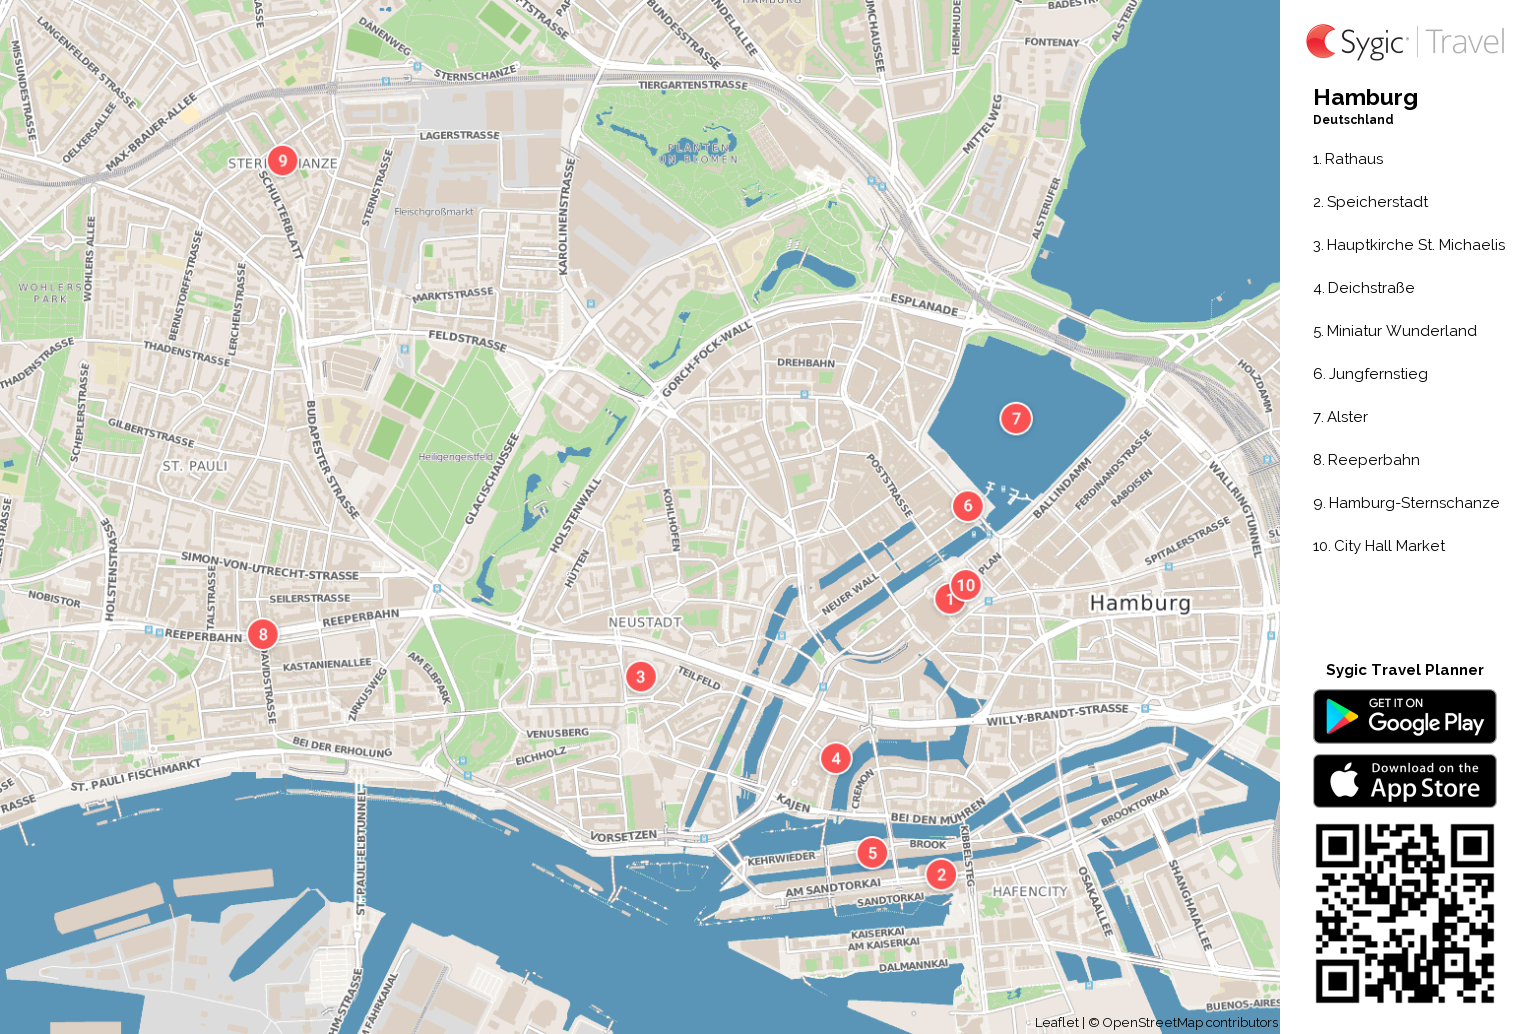 Karte Von Hamburg Ausdrucken Sygic Travel